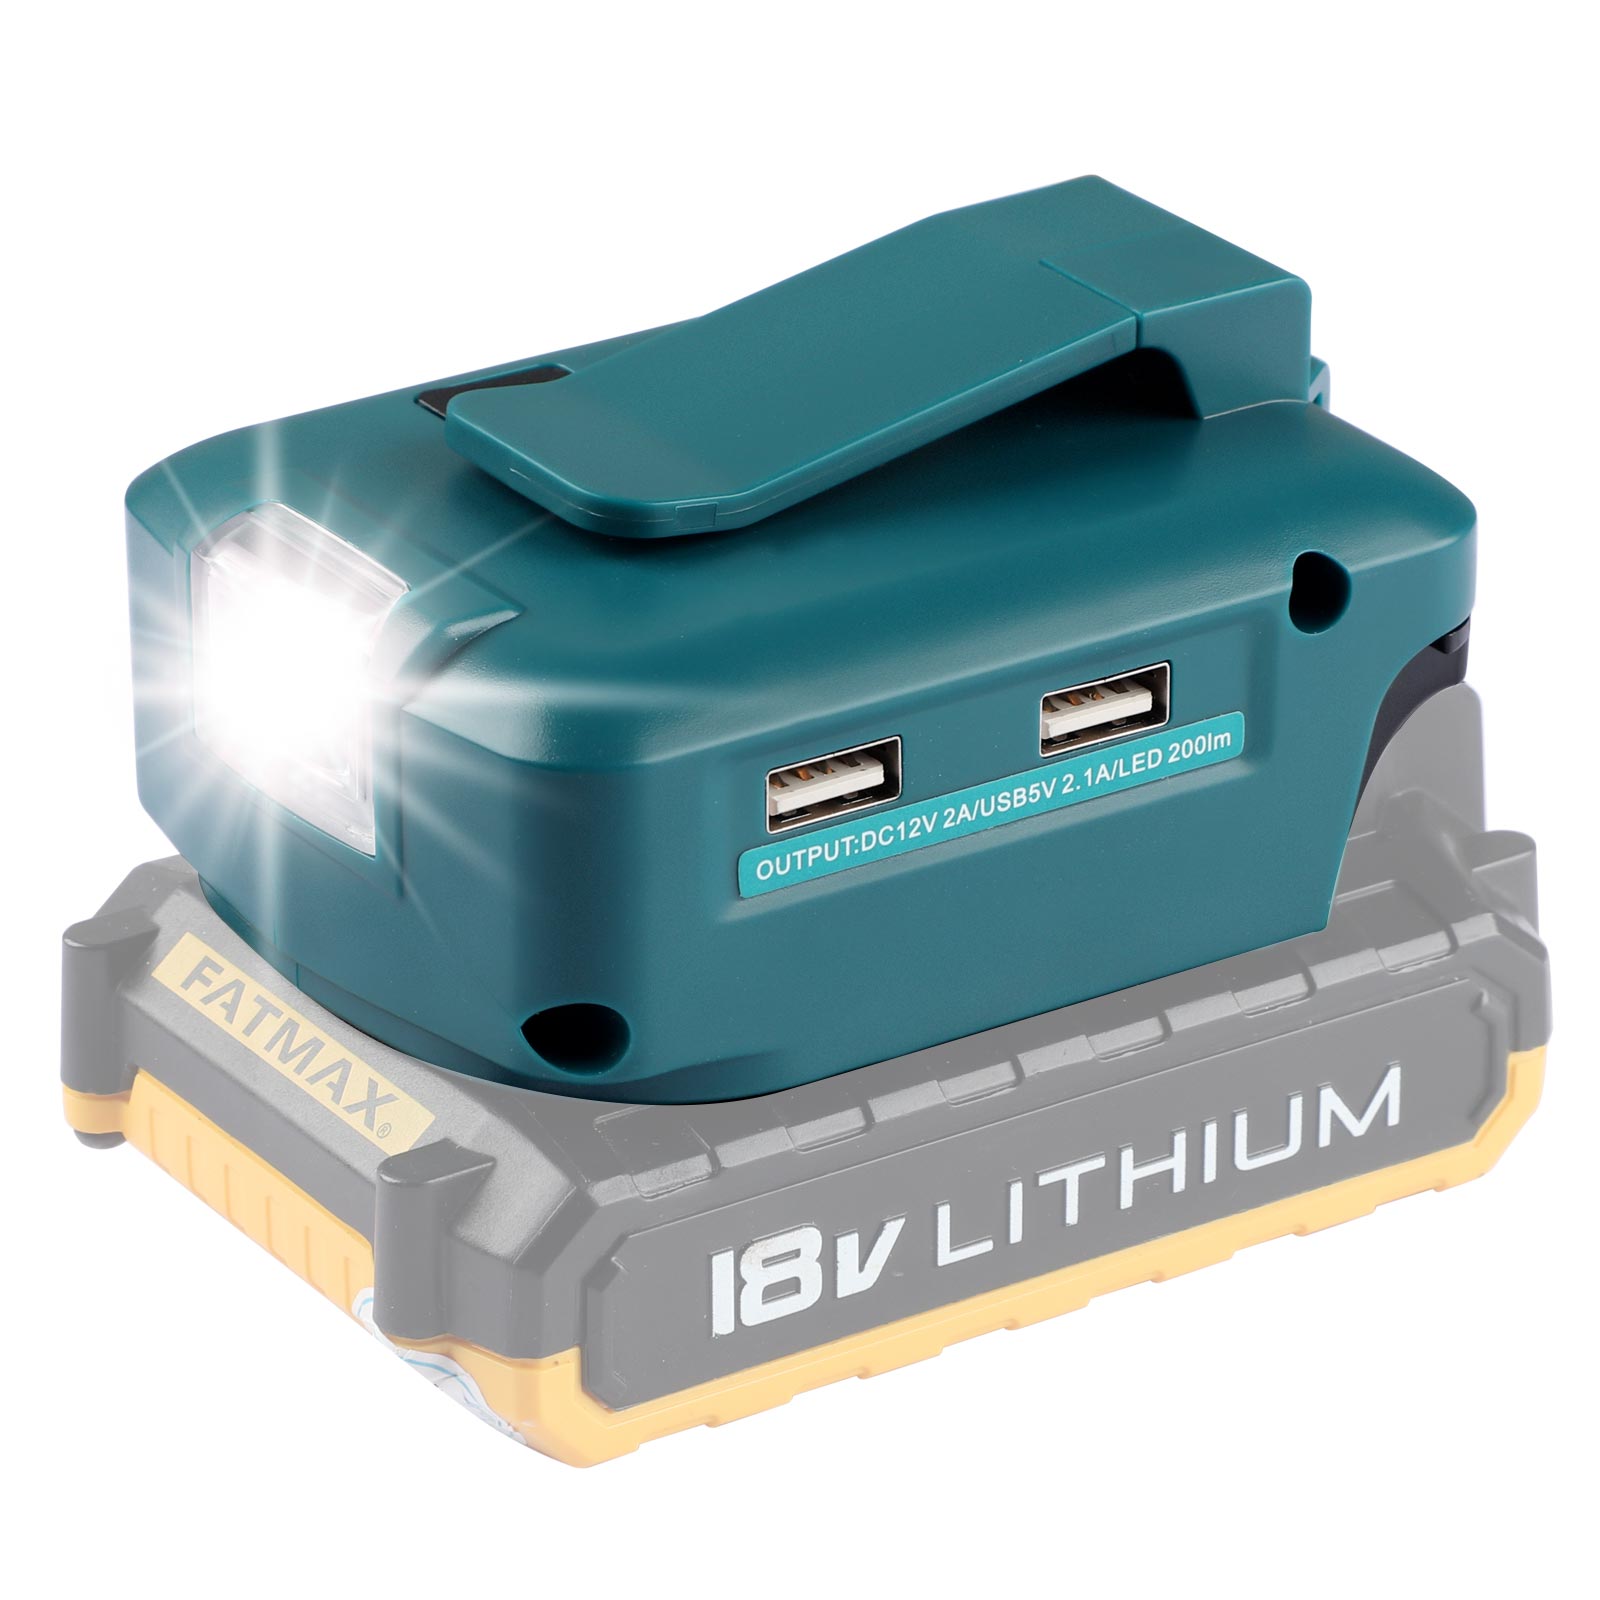 Adattatore per batteria Urun Luce a LED con porta CC e 2 porte USB per alimentazione a batteria al litio Black & Decker 14,4-18 V